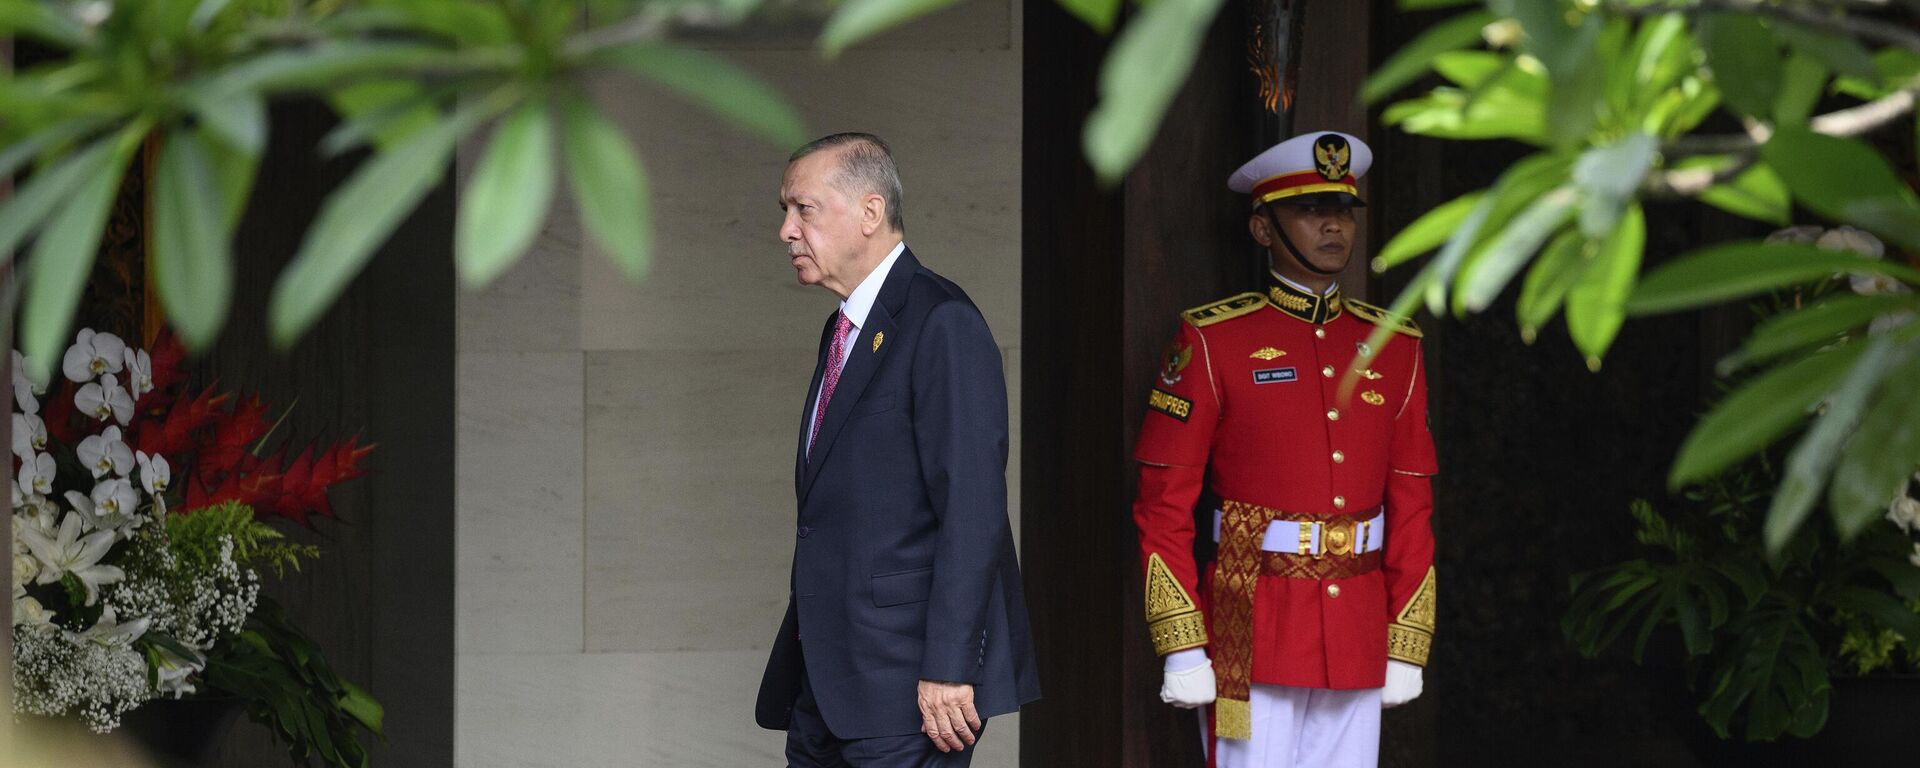 Президент Турции Реджеп Тайип Эрдоган прибывает к началу саммита G20 в Бали, Индонезия - Sputnik Латвия, 1920, 12.07.2023